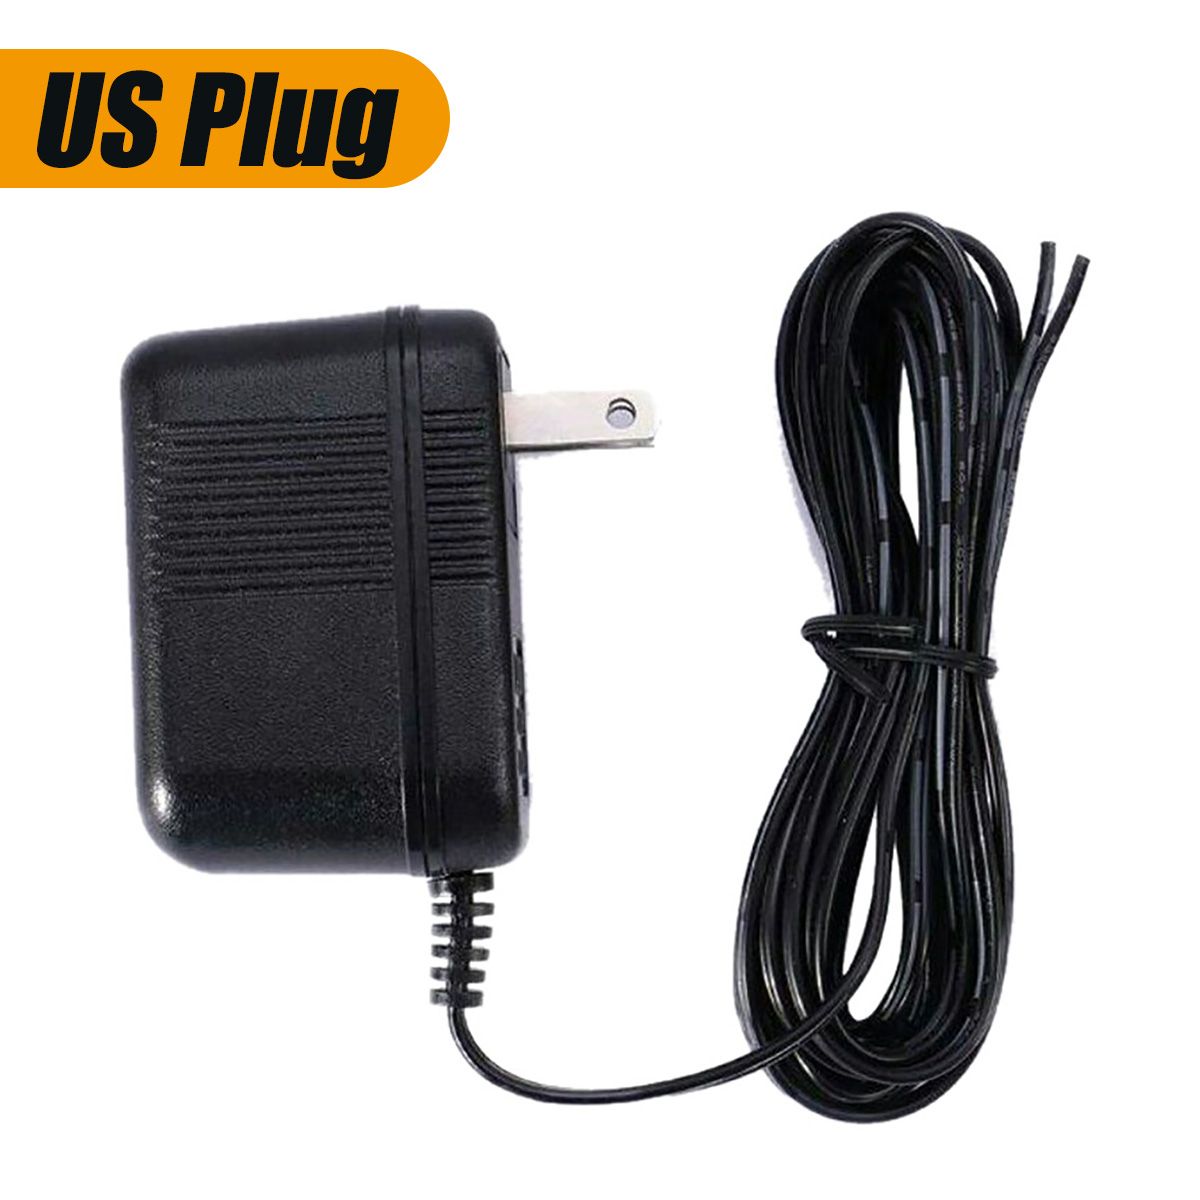 6M-US-Plug-Video-Ring-Doorbell-Power-Supply-Adapter-Transformer-1433065